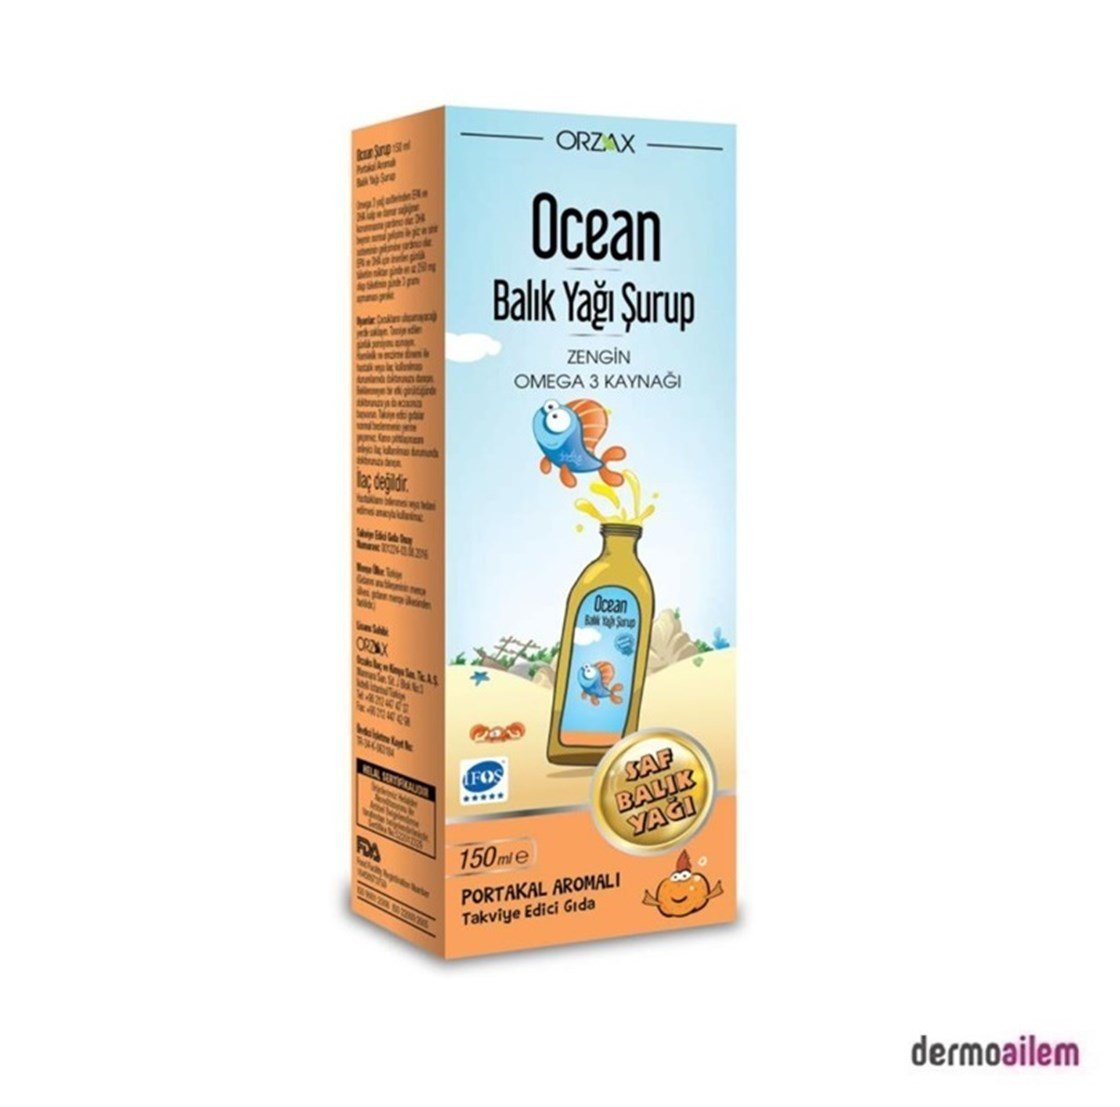 Ocean Omega 3 Balık Yağı Portakal Aromalı Şurup 150 ml (Kral Şakir) Ürün ve  Fiyatları | Dermoailem.com